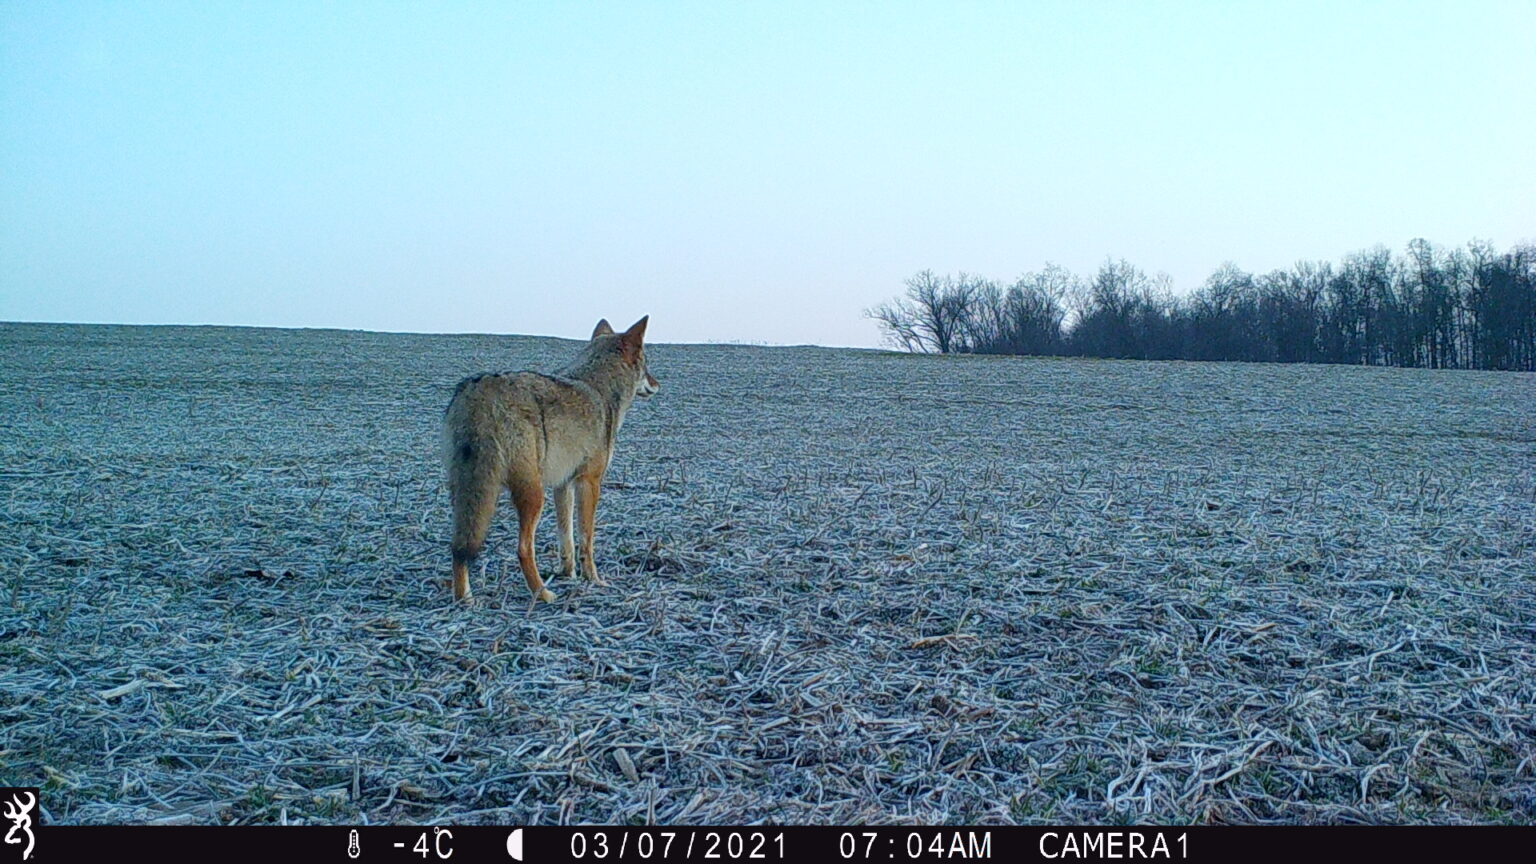 A Coyote looks across a barren field